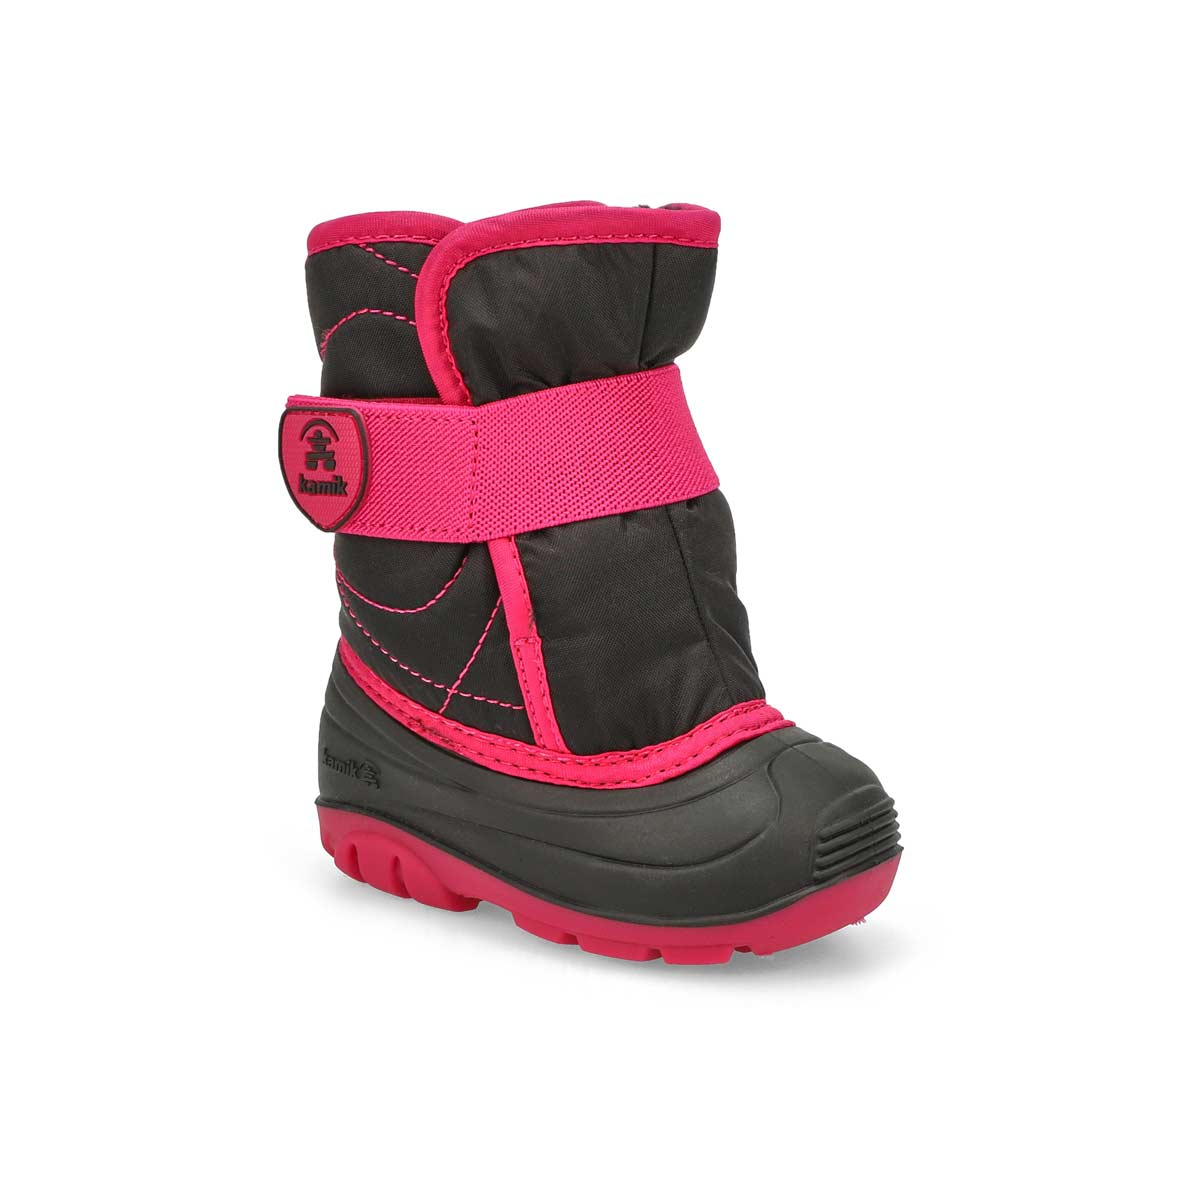 Infants' Snowbug 3 Waterproof Winter Boot